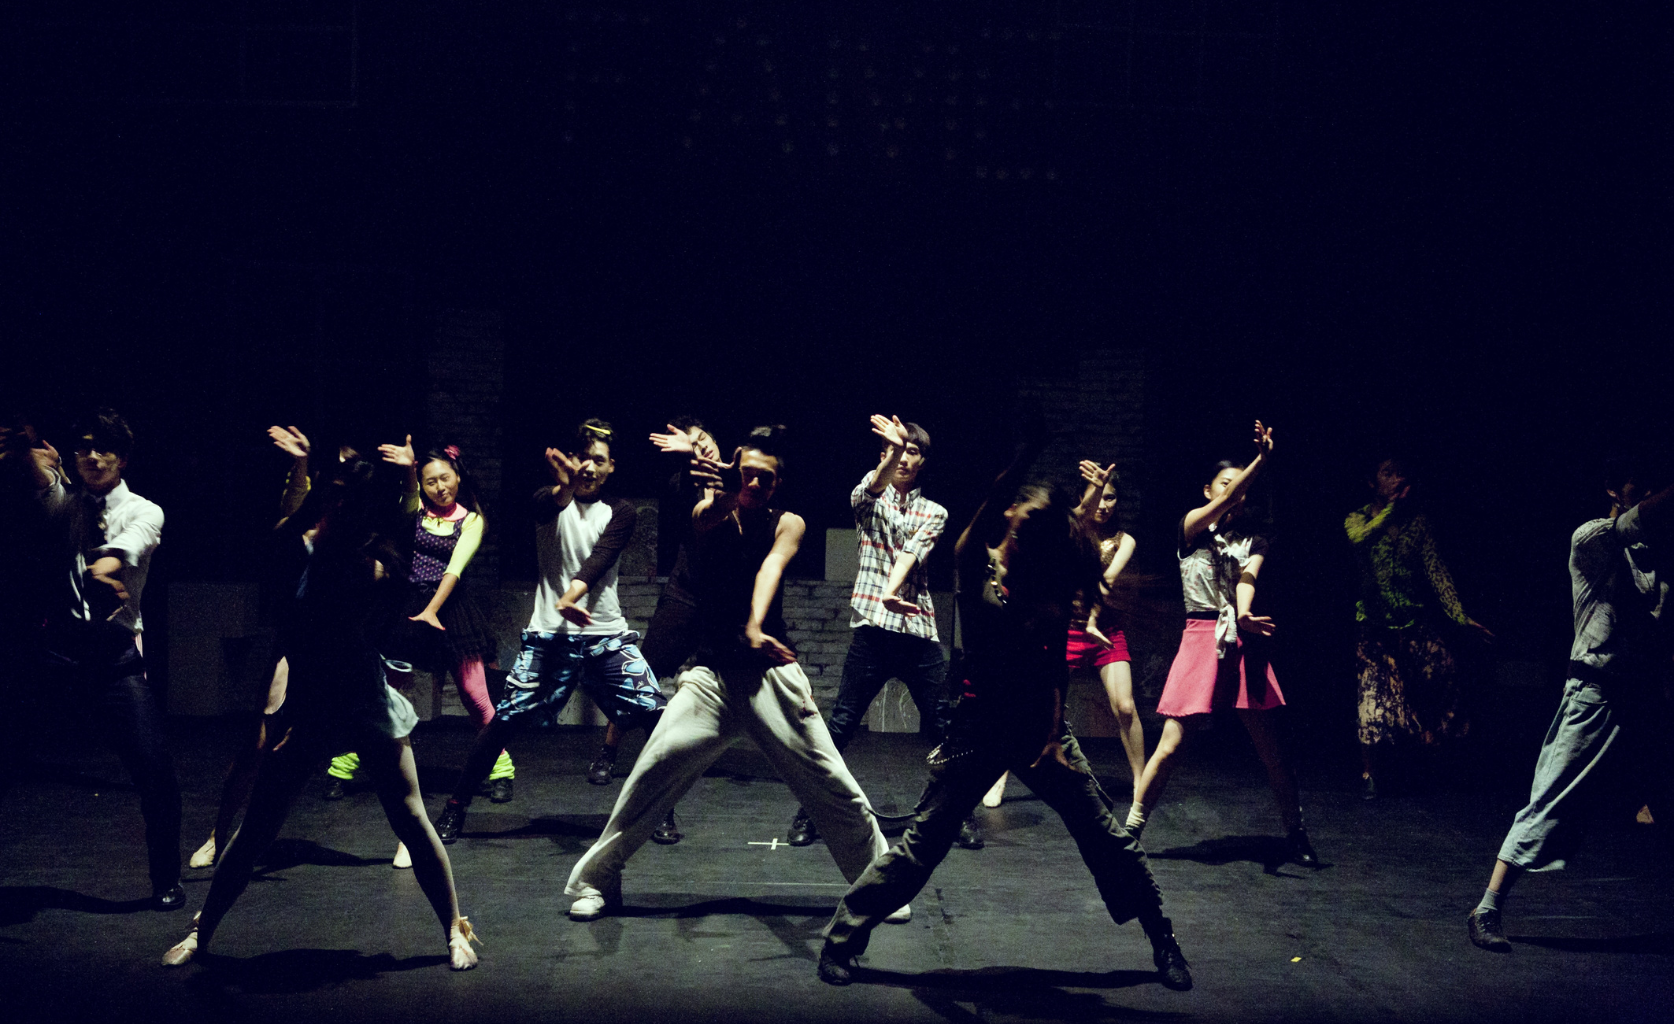 Das Bild zeigt ein großes Tanzensemble aus jungen Leuten auf einer Bühne